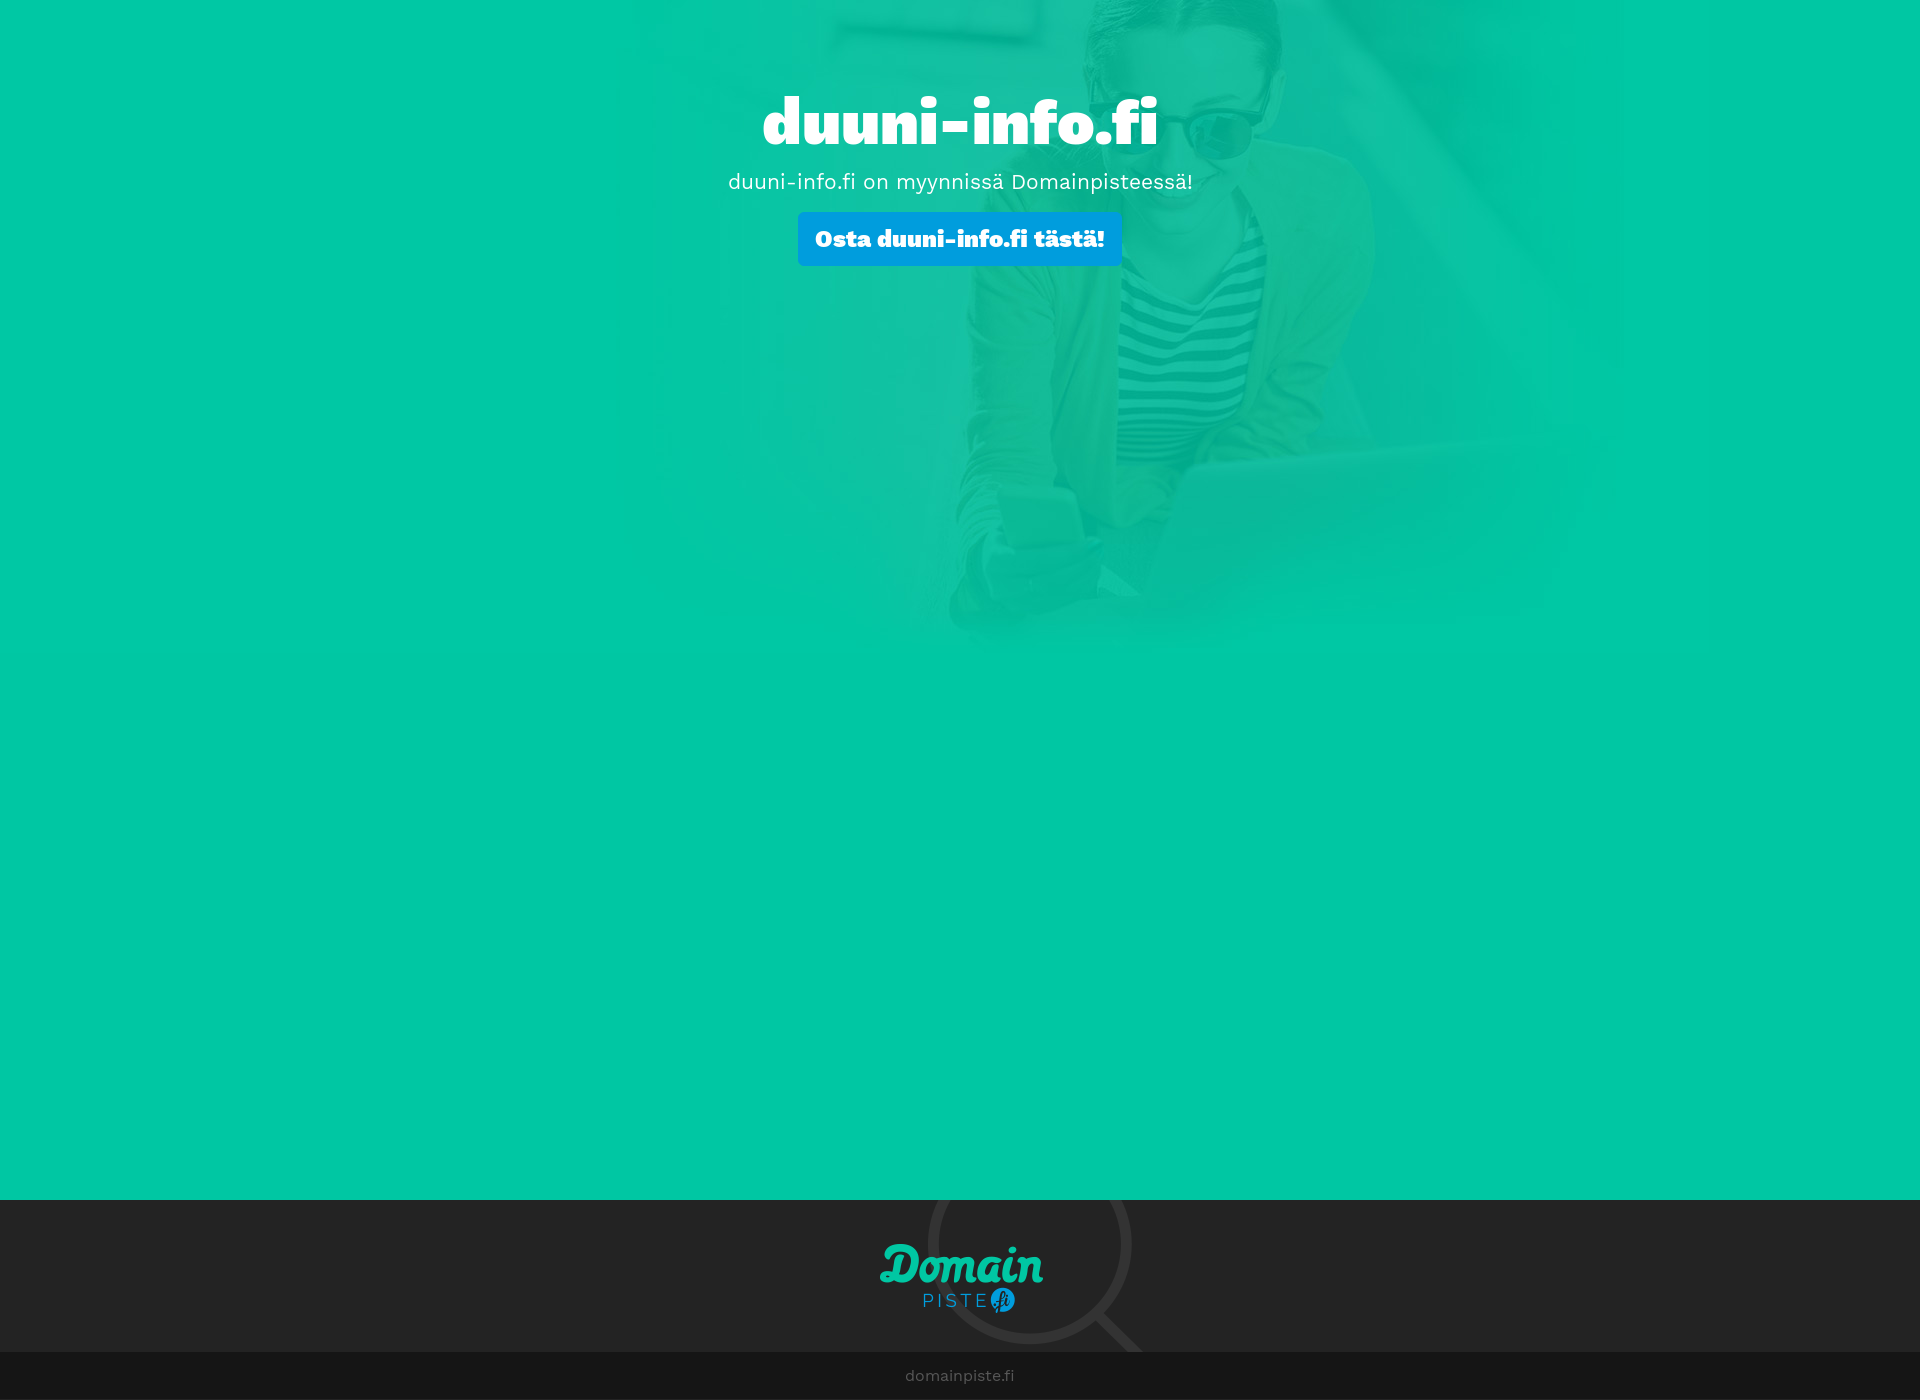 Screenshot for duuni-info.fi